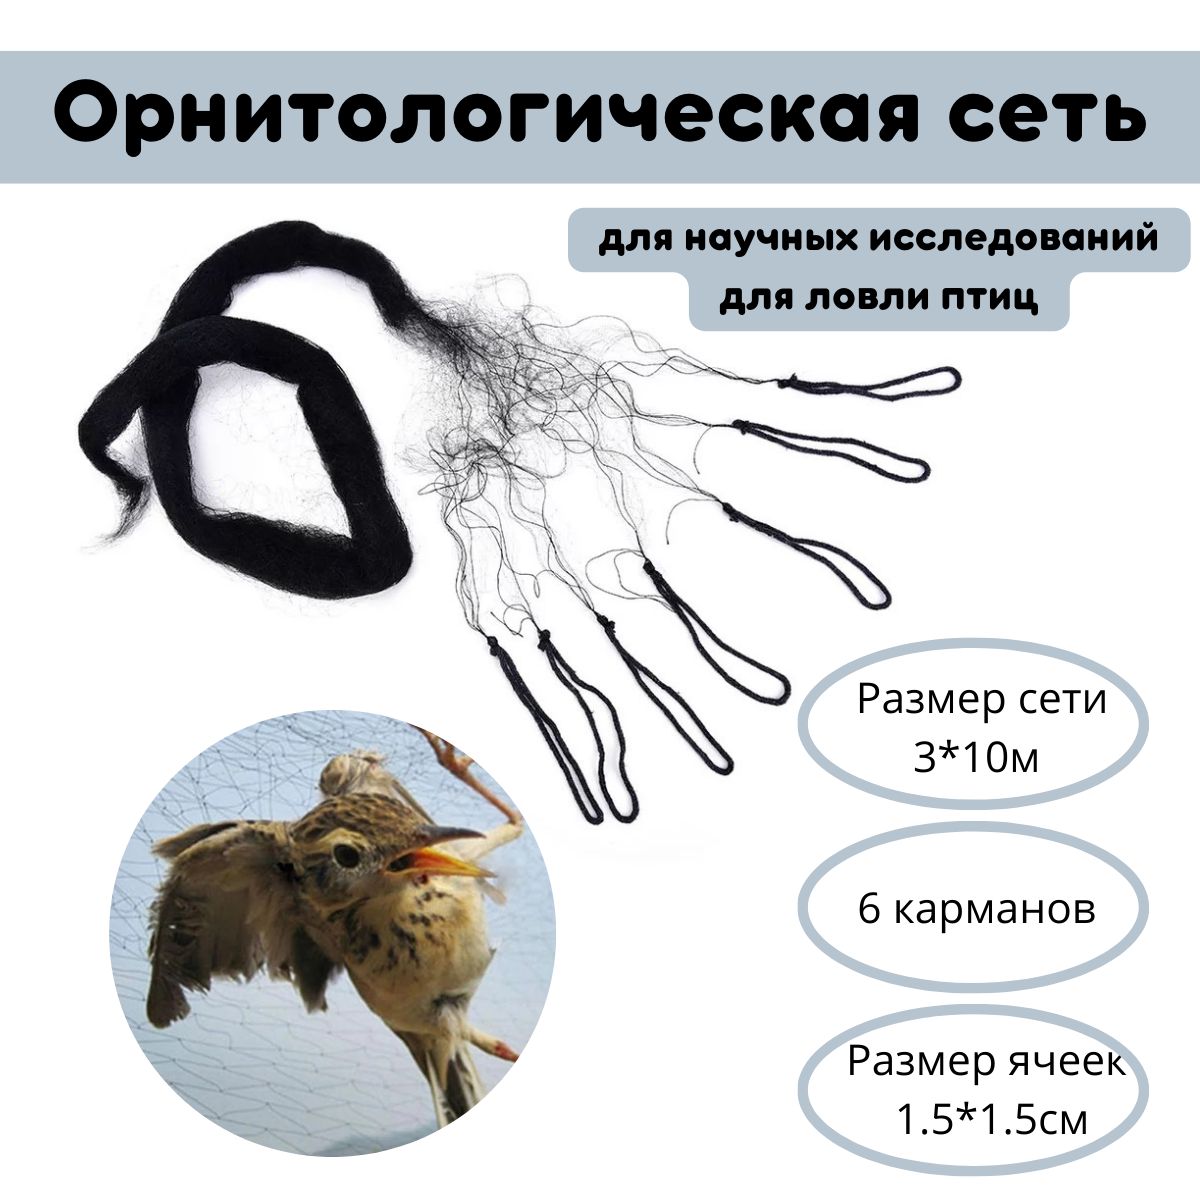 На омском рынке из-за развешенных сетей гибнут птицы | Общество | Омск-информ